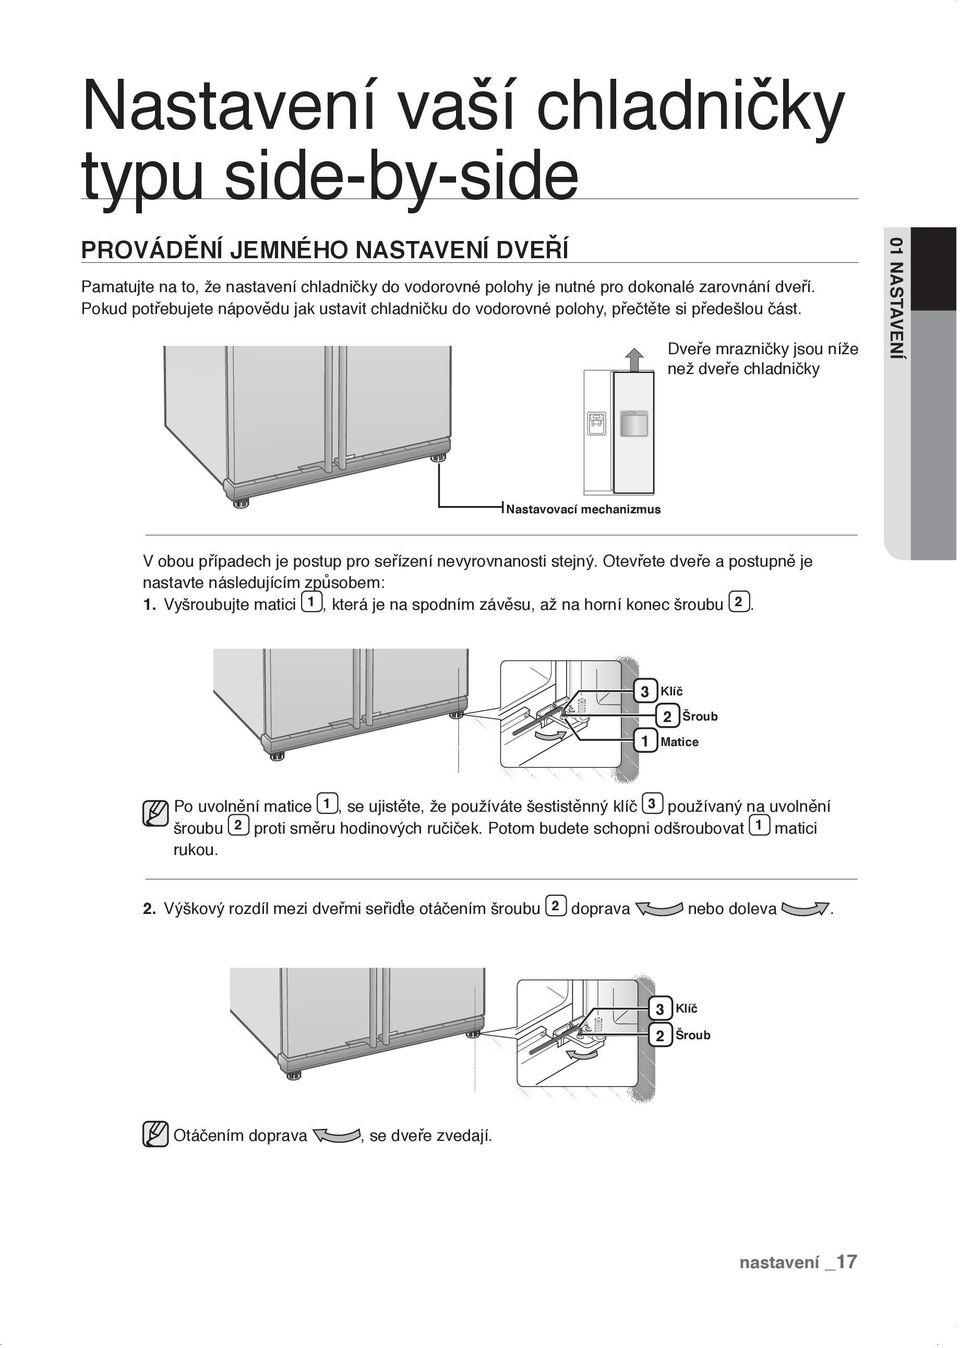 Dveře mrazničky jsou níže než dveře chladničky 01 NASTAVENÍ Nastavovací mechanizmus V obou případech je postup pro seřízení nevyrovnanosti stejný.